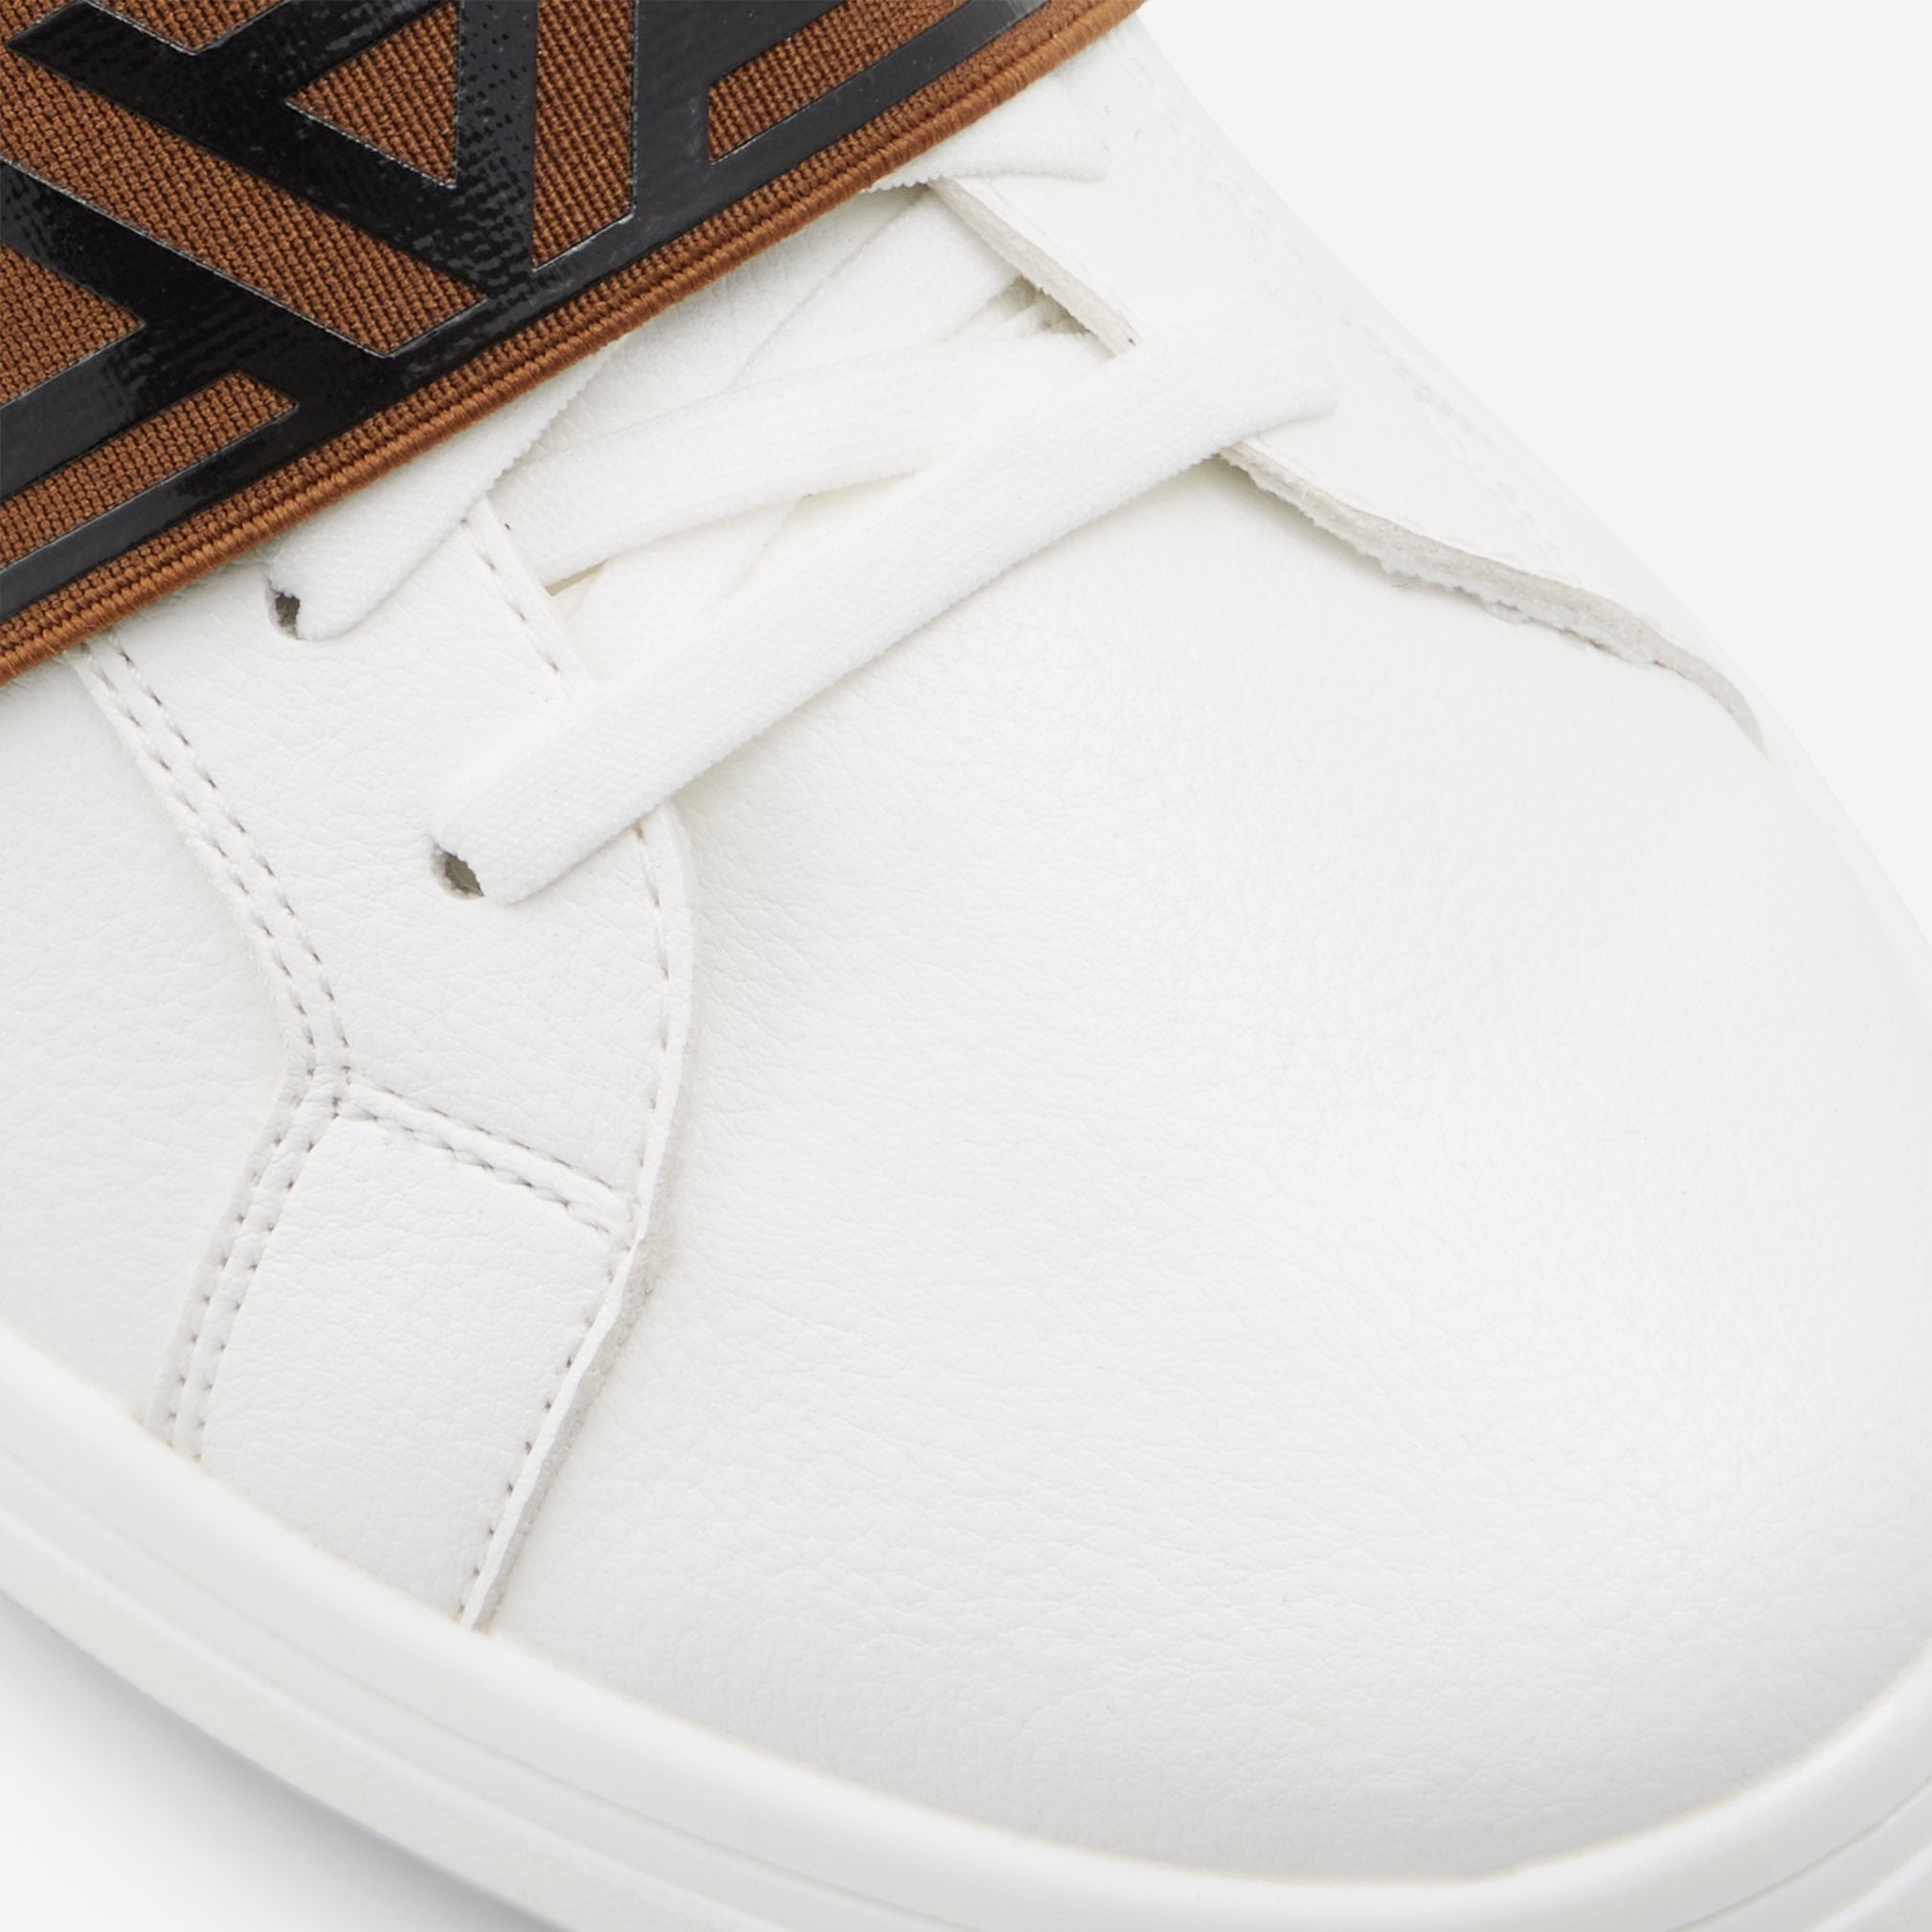 Coppio Men Shoes - White - ALDO KSA